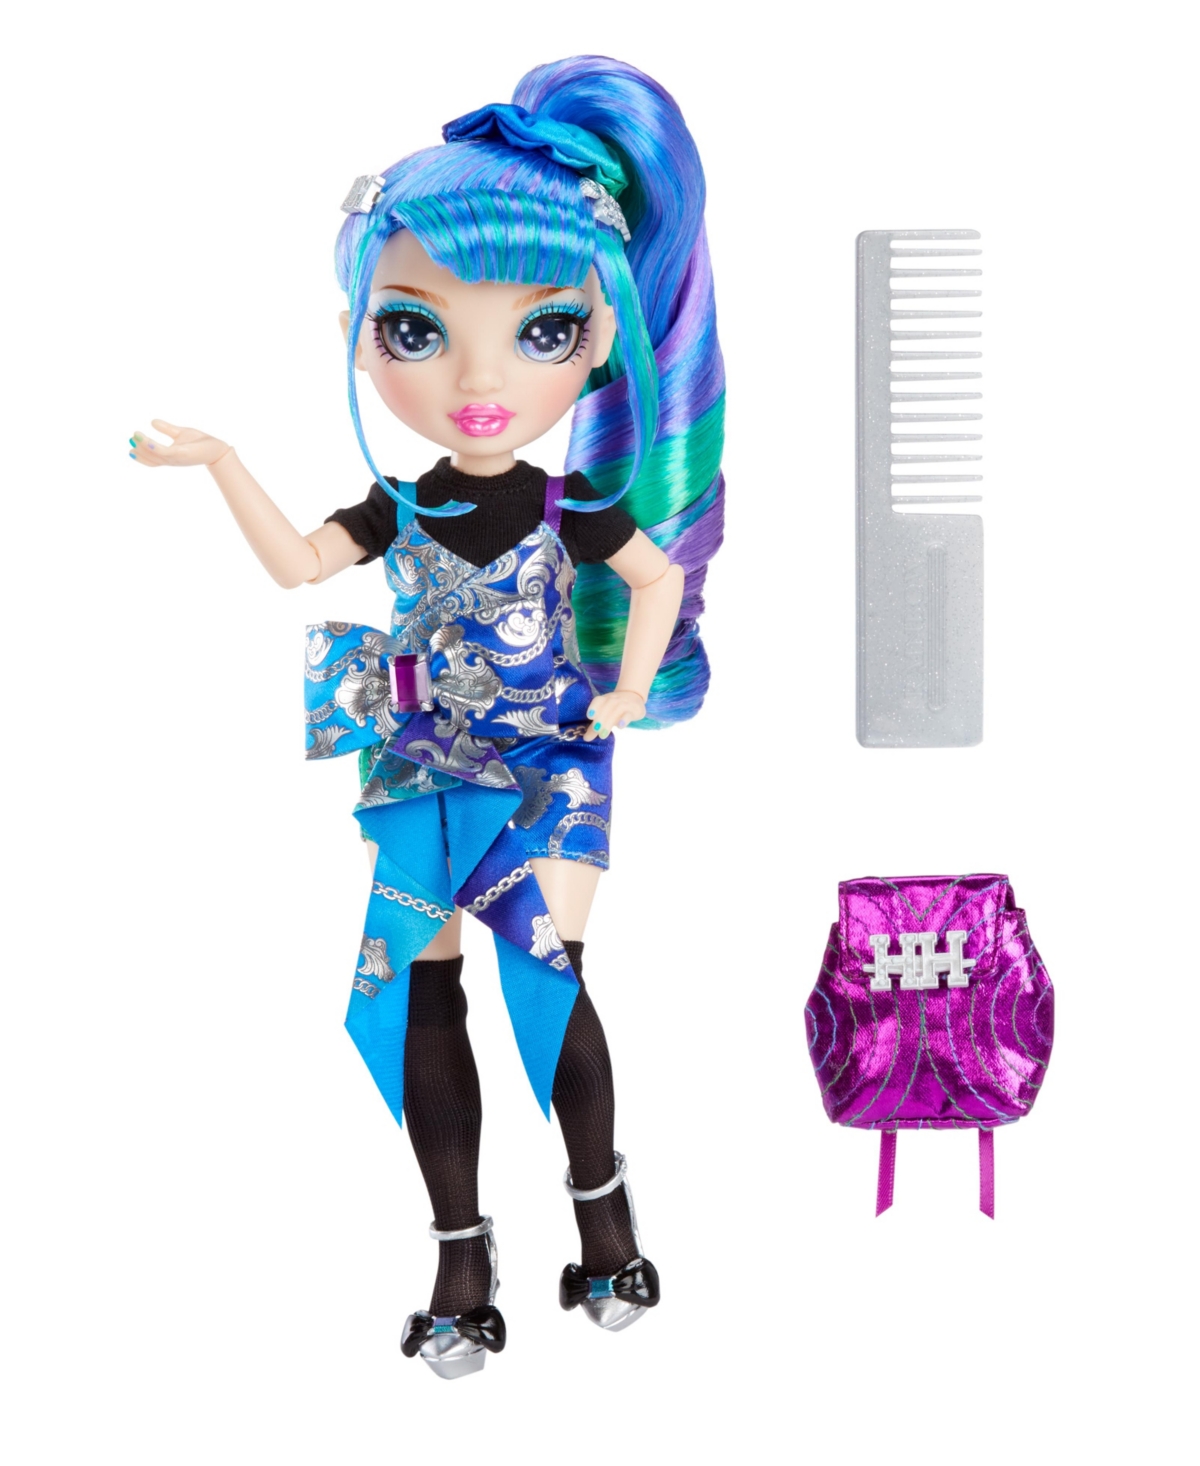 Shop Rainbow High Junior High Special Edition Doll, Holly De'vious In Multicolor